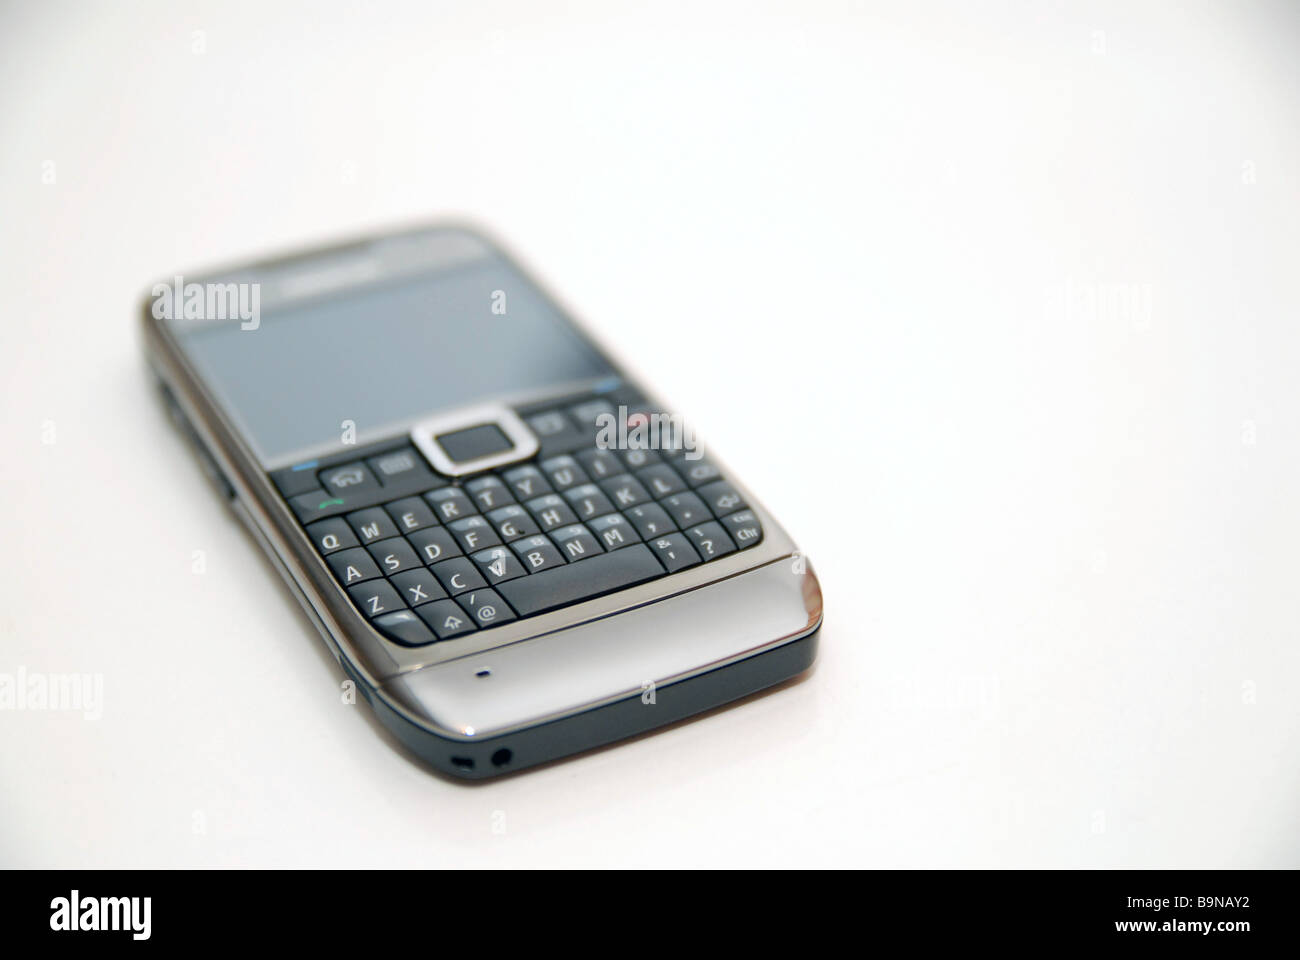 Un téléphone mobile Nokia/Appareil avec clavier AZERTY complet Photo Stock  - Alamy